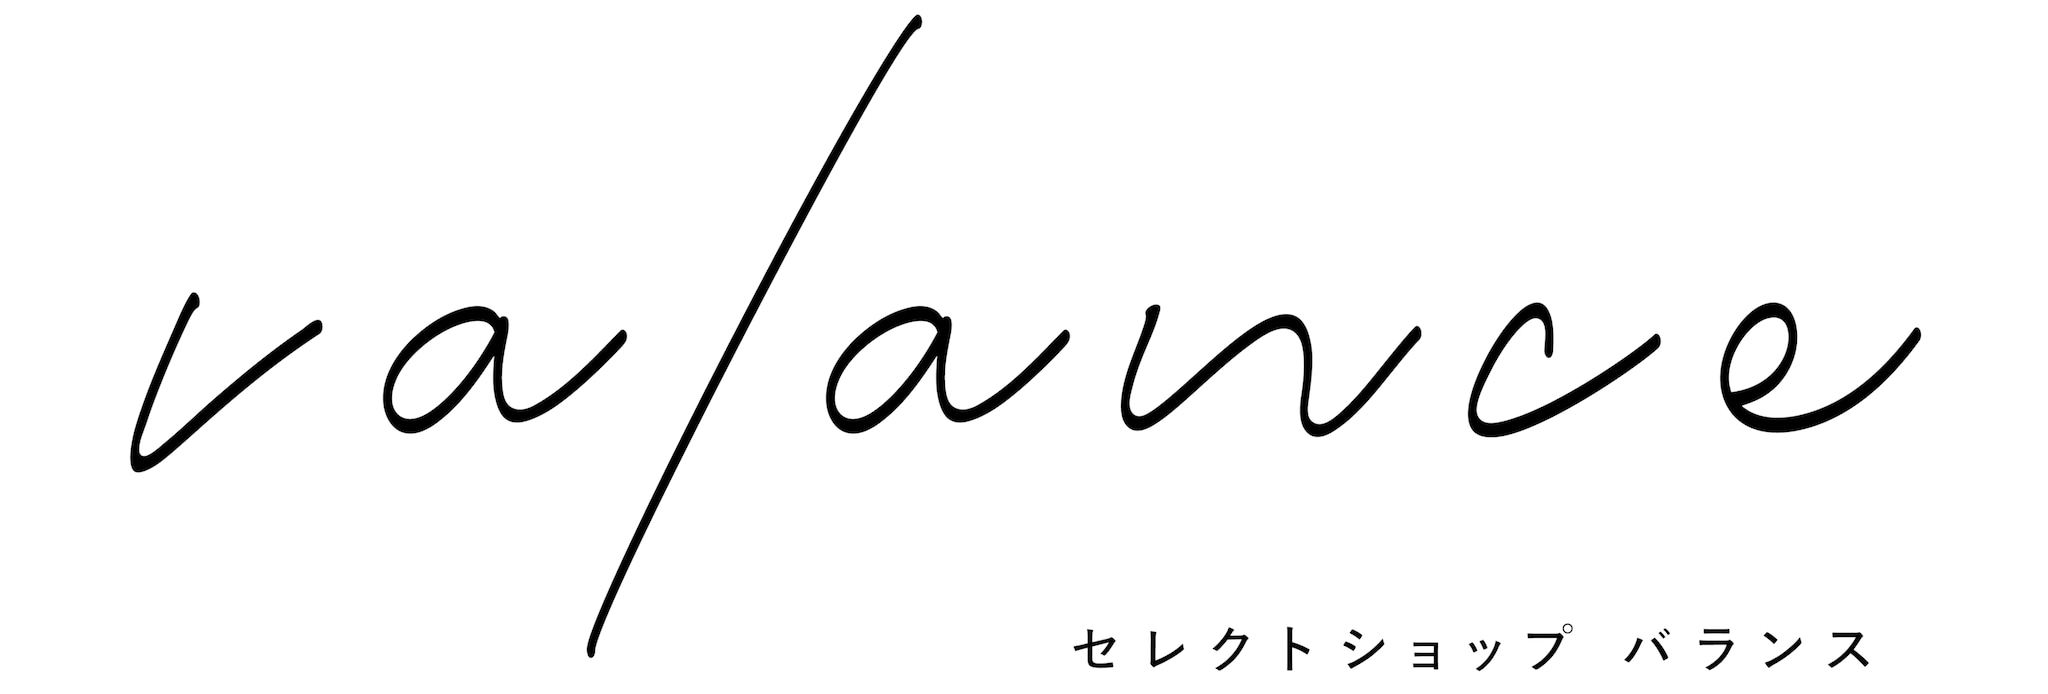 valance【バランス】福井セレクトショップ｜公式通販サイト